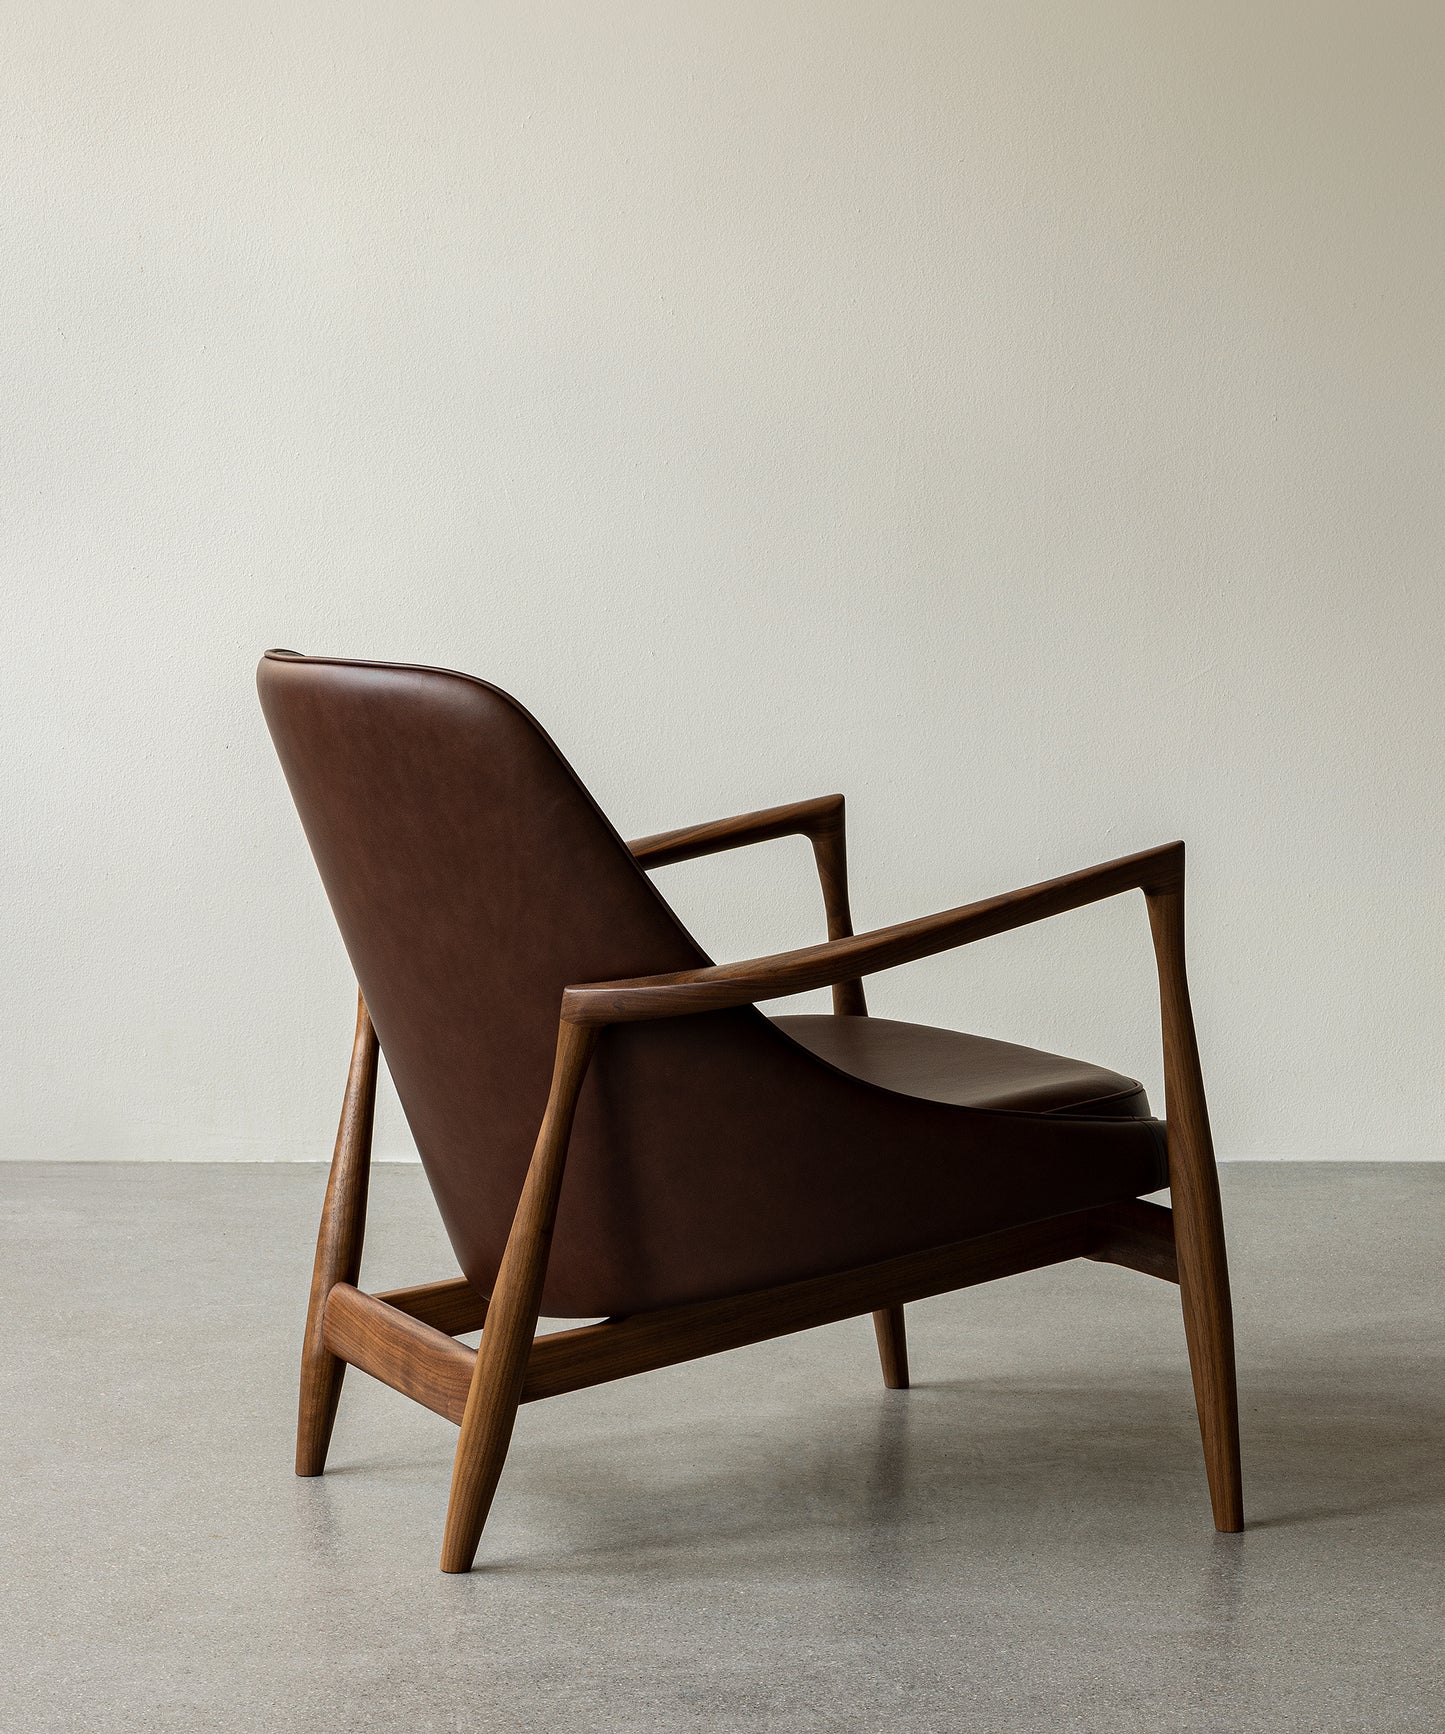 Elizabeth Lounge Chair